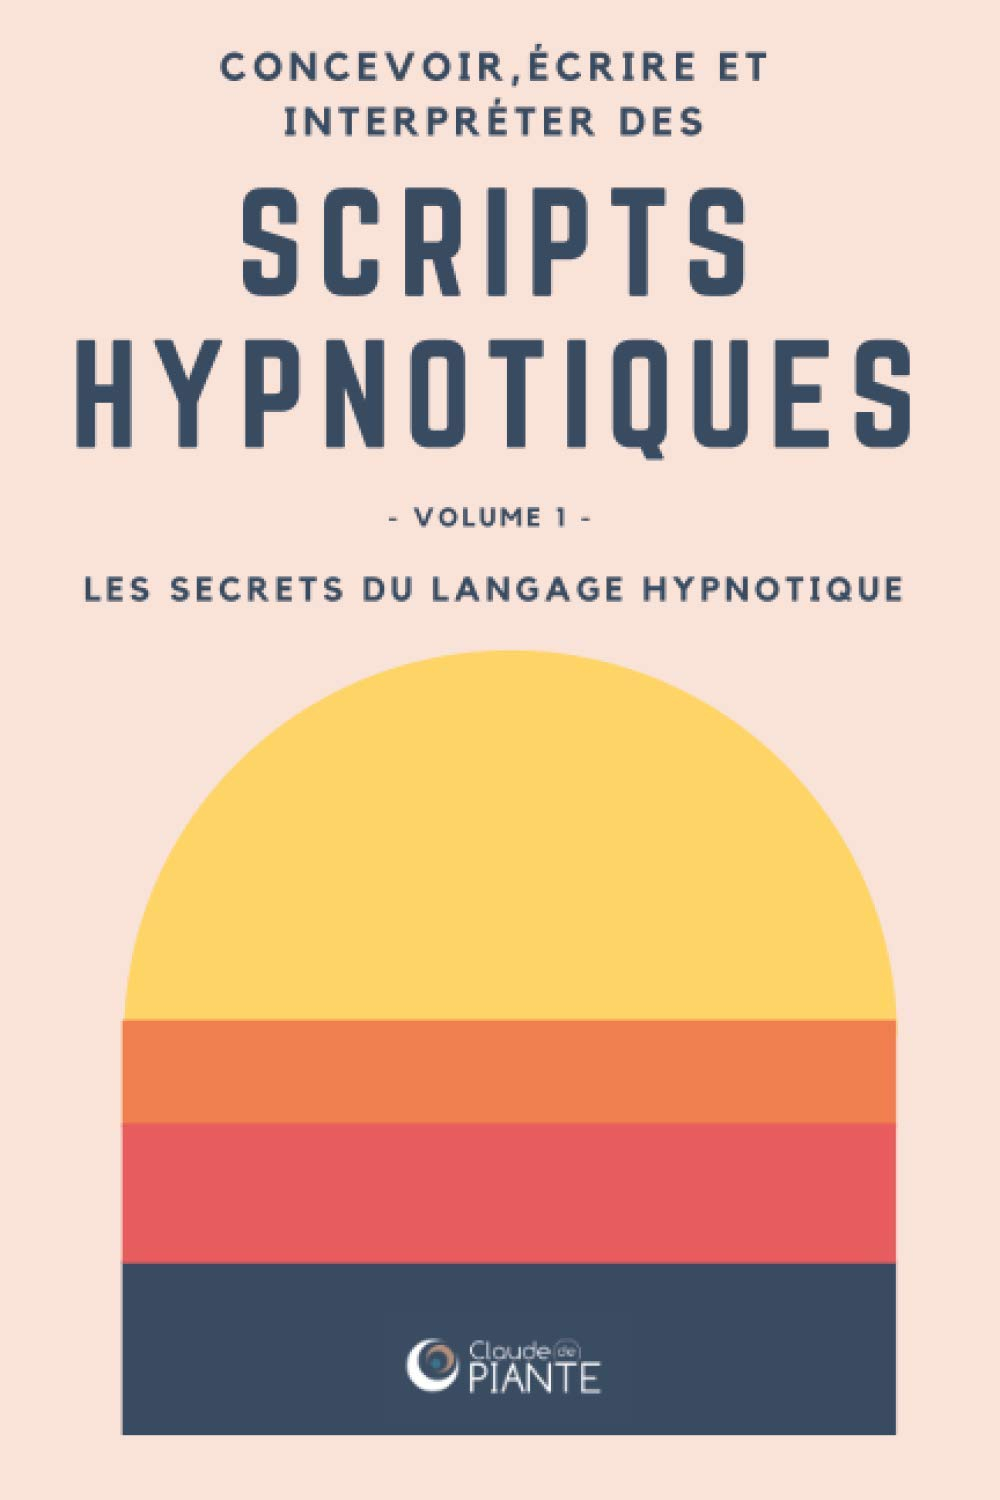 Concevoir, écrire et interpréter des scripts hypnotiques: Volume 1 - Les secrets du langage hypnotiq